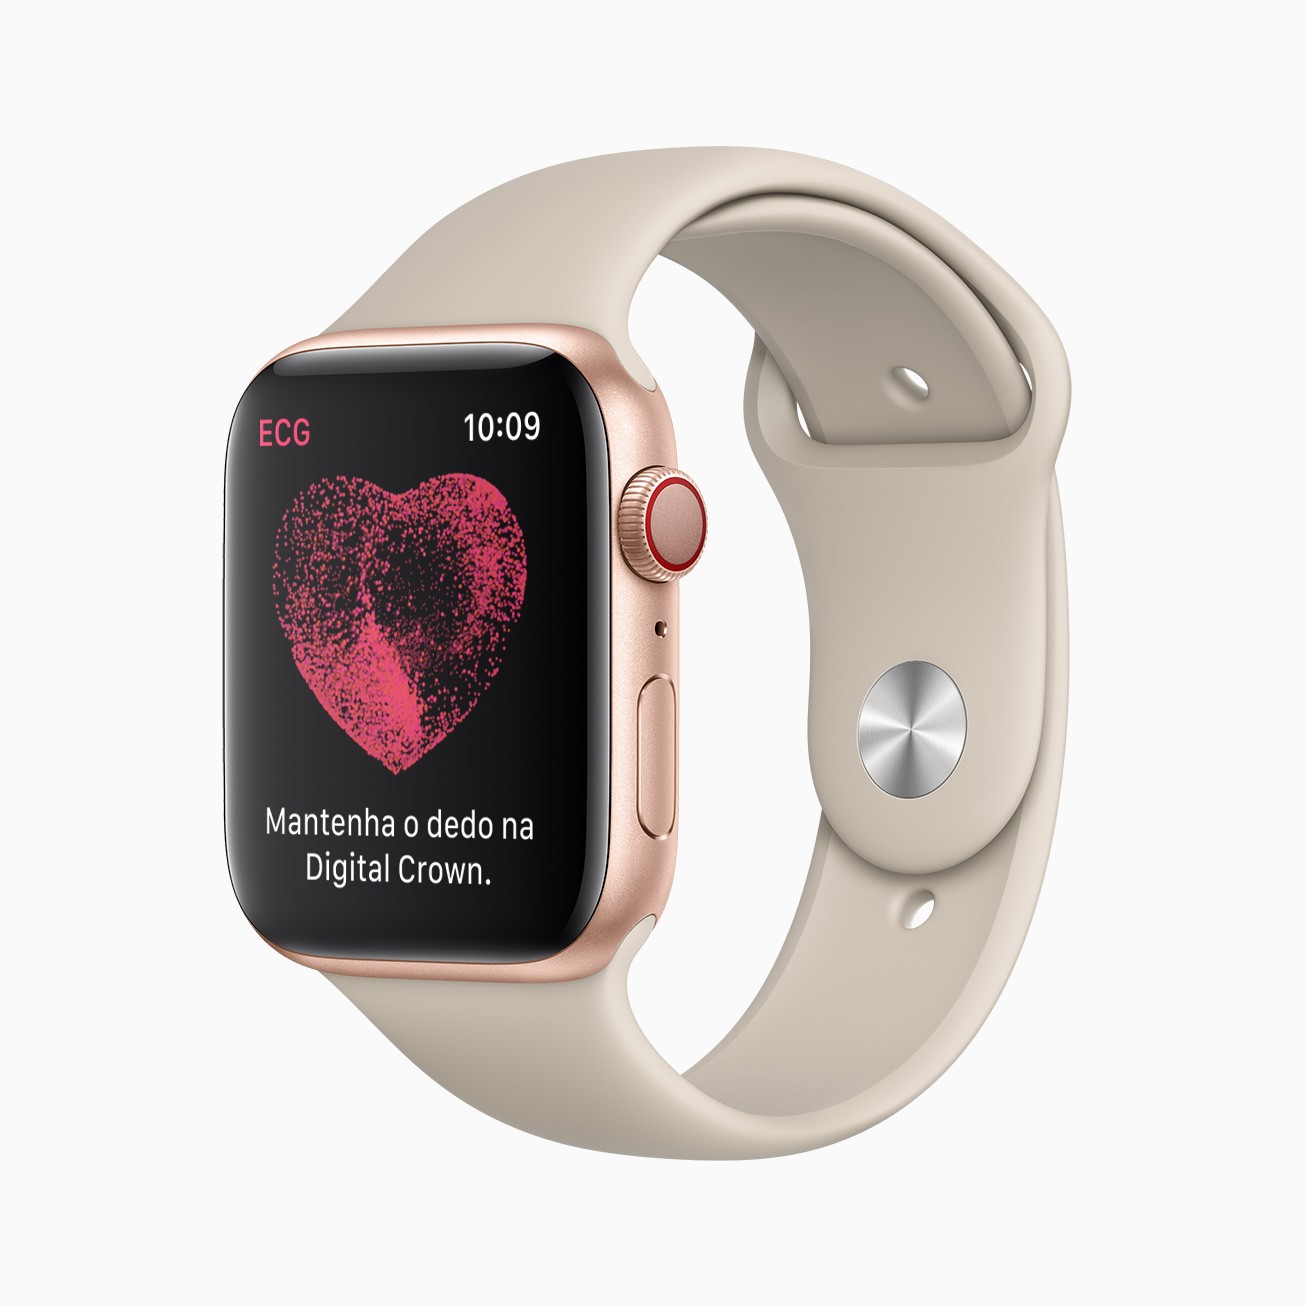 Os consumidores podem fazer um eletrocardiograma com o Apple Watch Series 4 e posteriores a qualquer momento. (Foto: Divulgação/Apple)